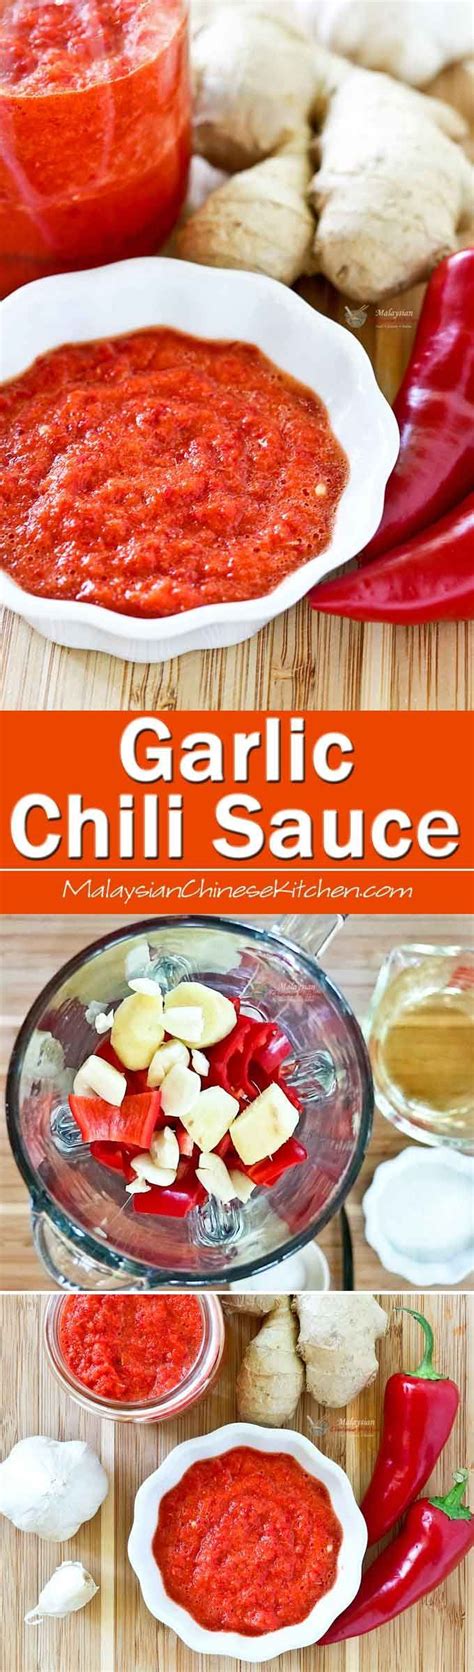 Recipes using chili garlic sauce. Garlic Chili Sauce | Recipe | Chili garlic sauce, Food ...